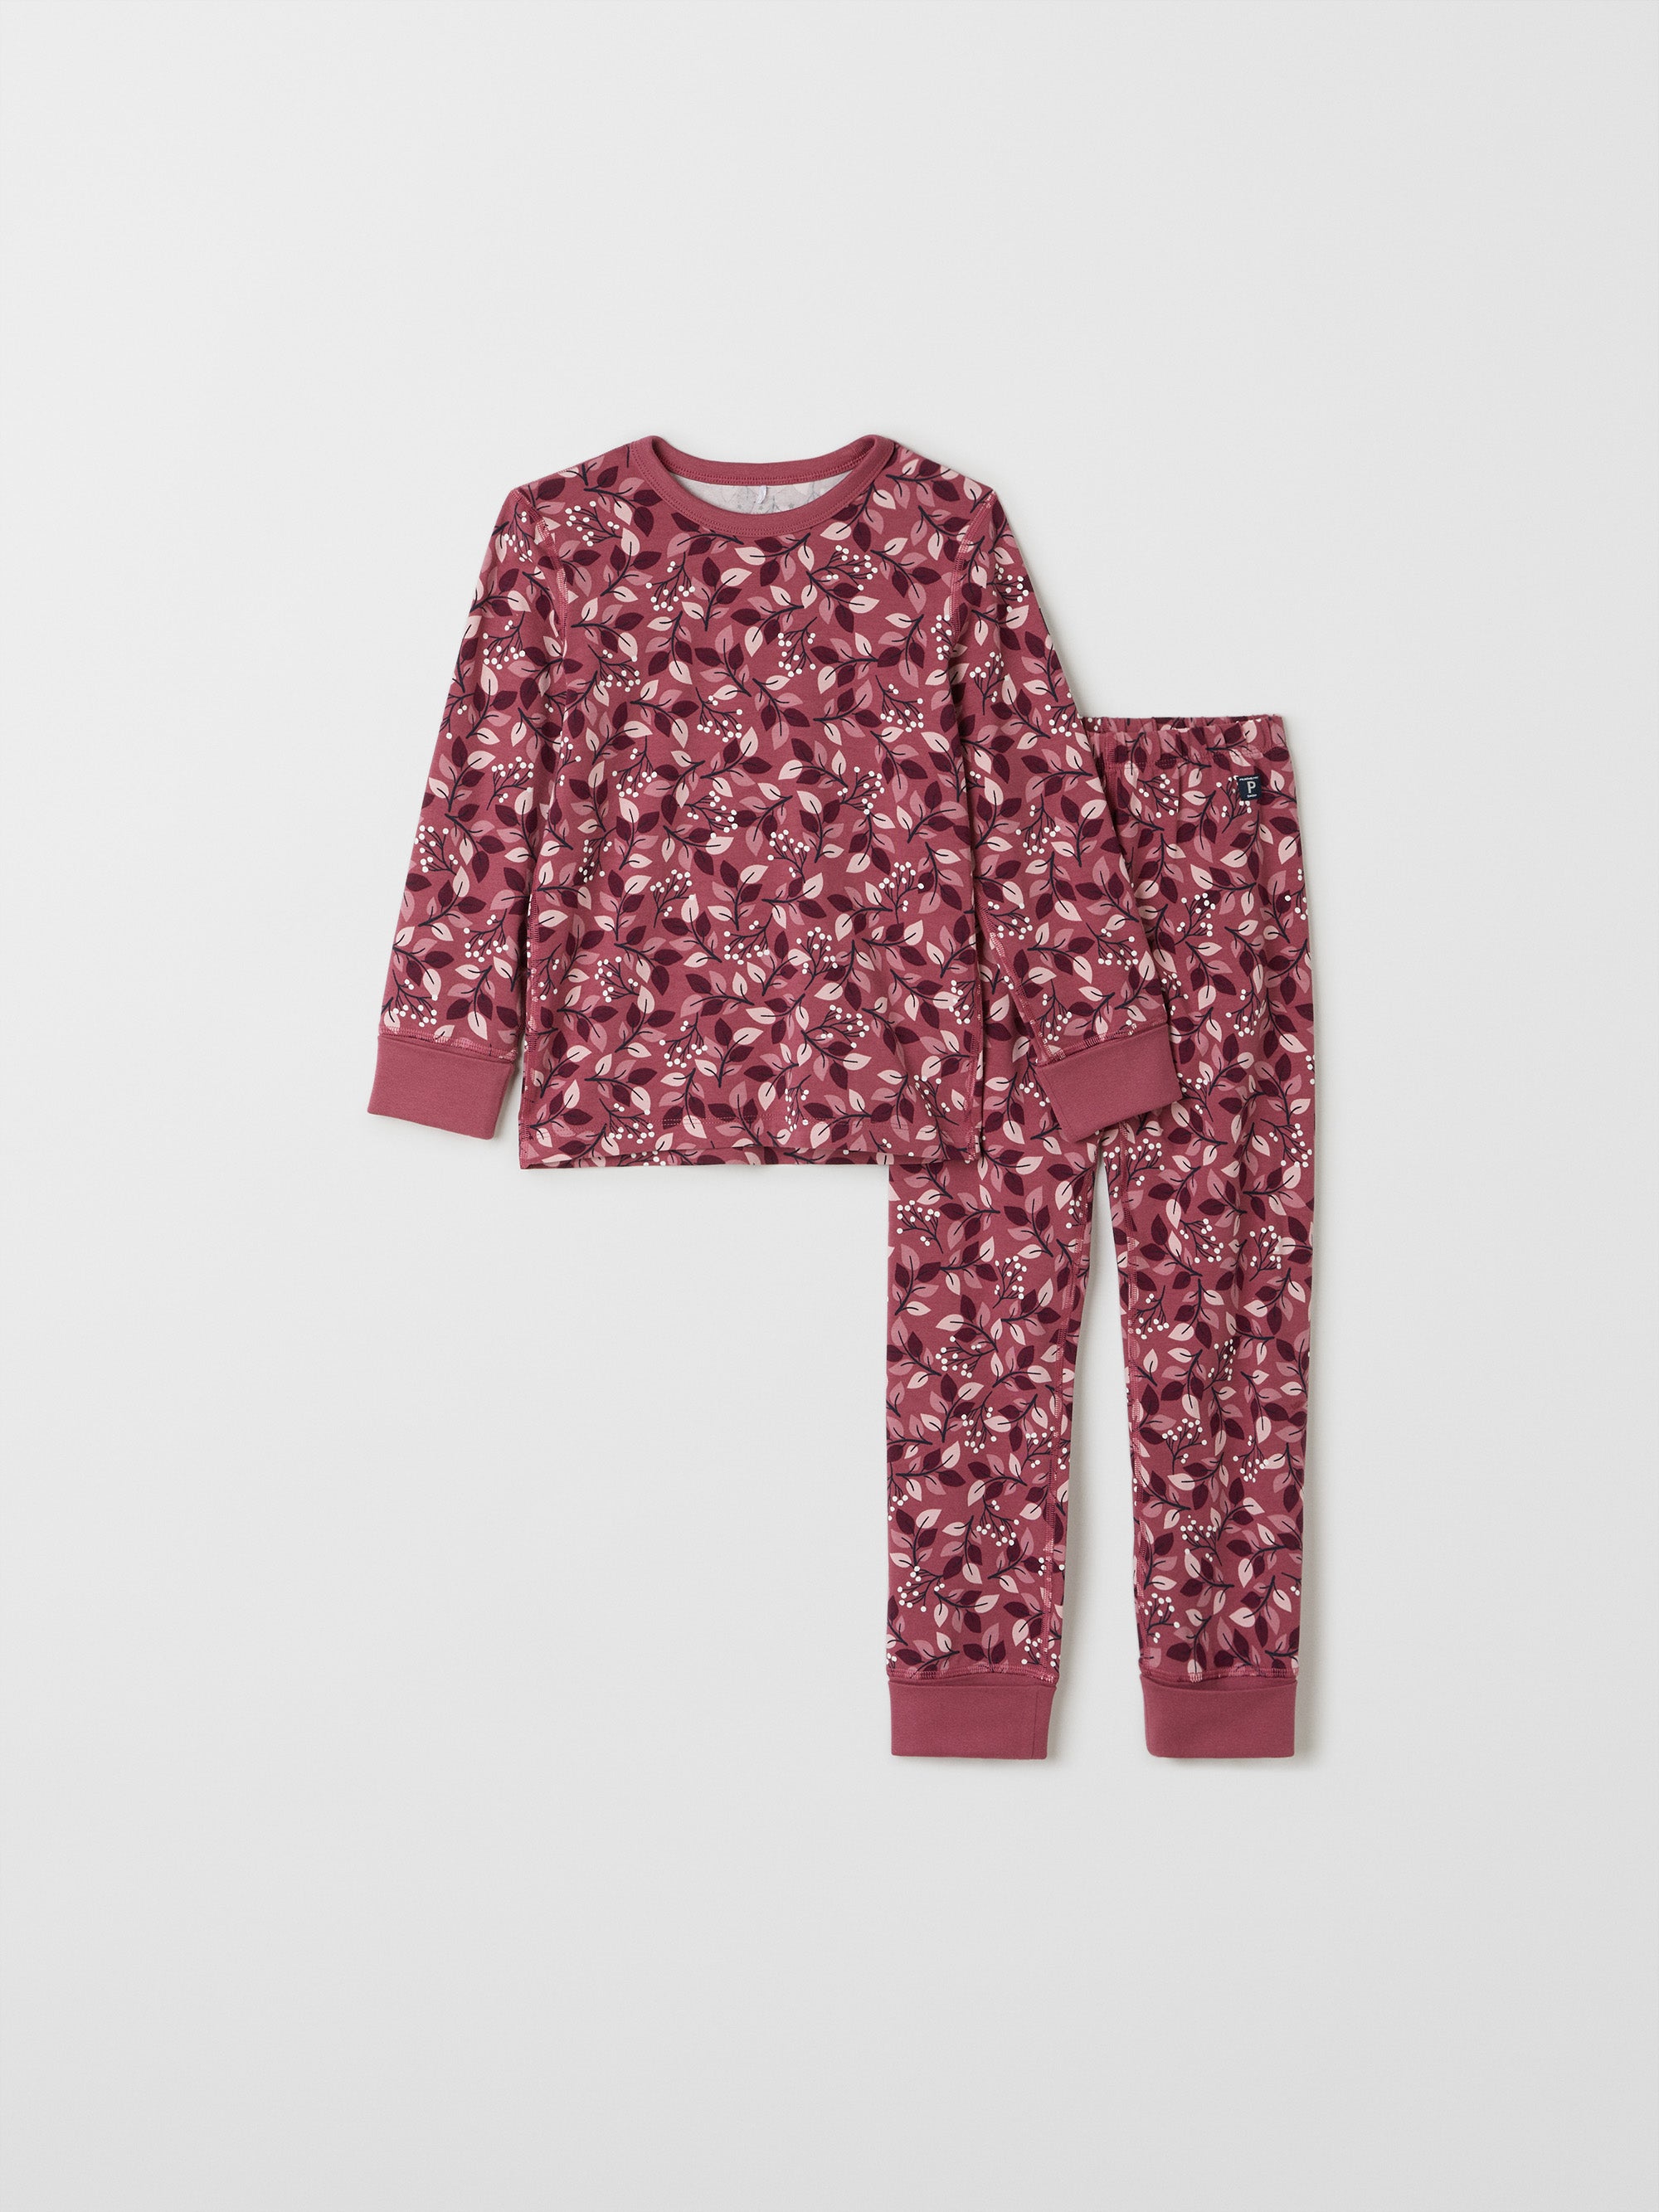 Leaf Print Kids Pyjamas